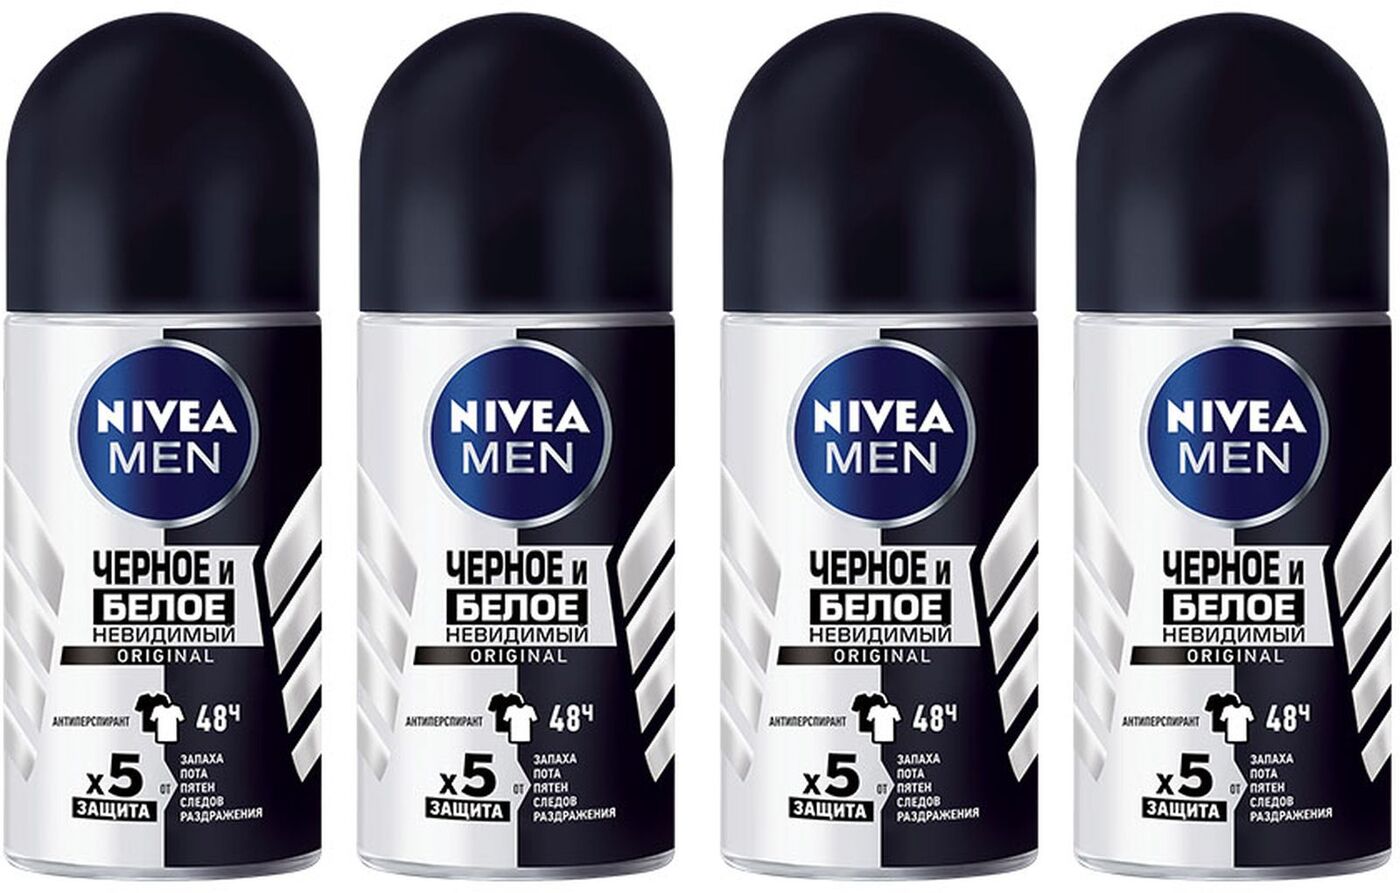 Nivea men черный. Дезодорант-антиперспирант шариковый Nivea men "черное и белое" 50 мл. Nivea men черное и белое невидимый Original. Nivea men 50мл стик черное и белое Original.